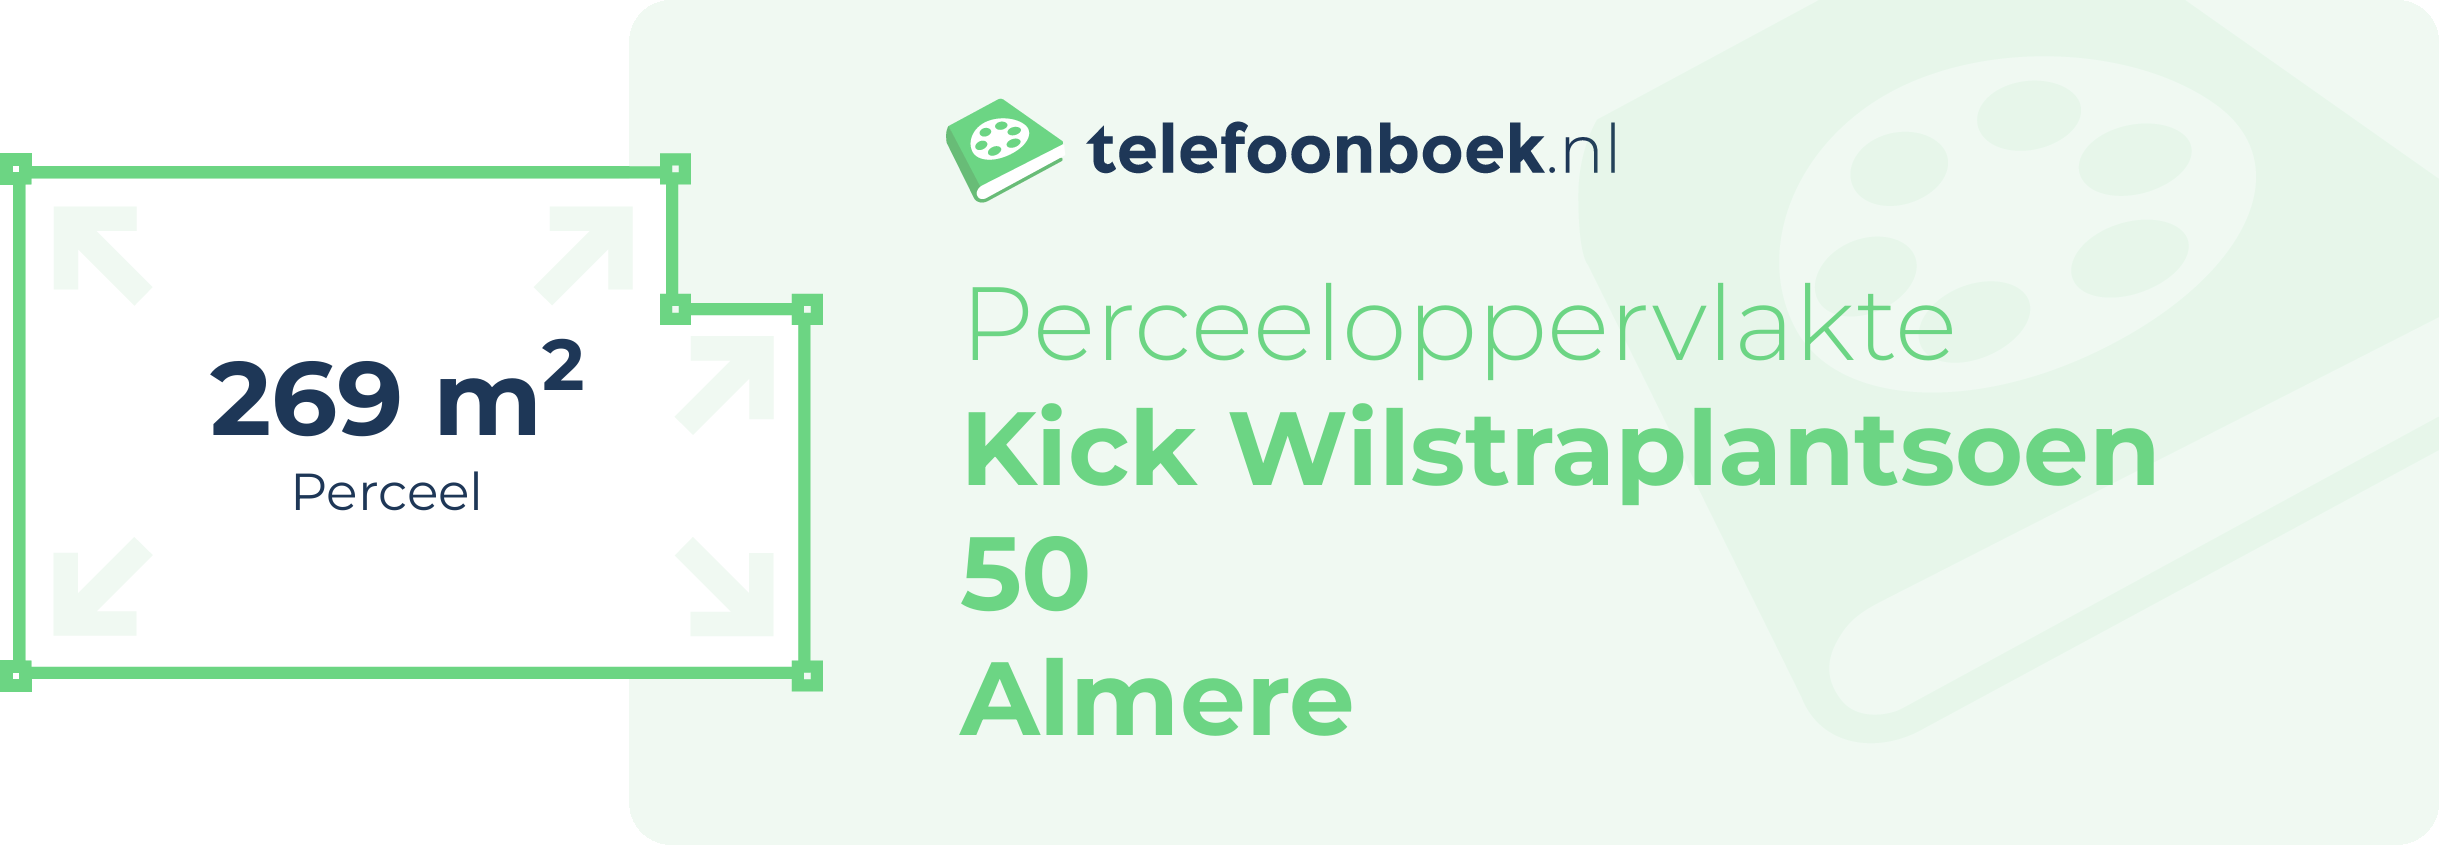 Perceeloppervlakte Kick Wilstraplantsoen 50 Almere